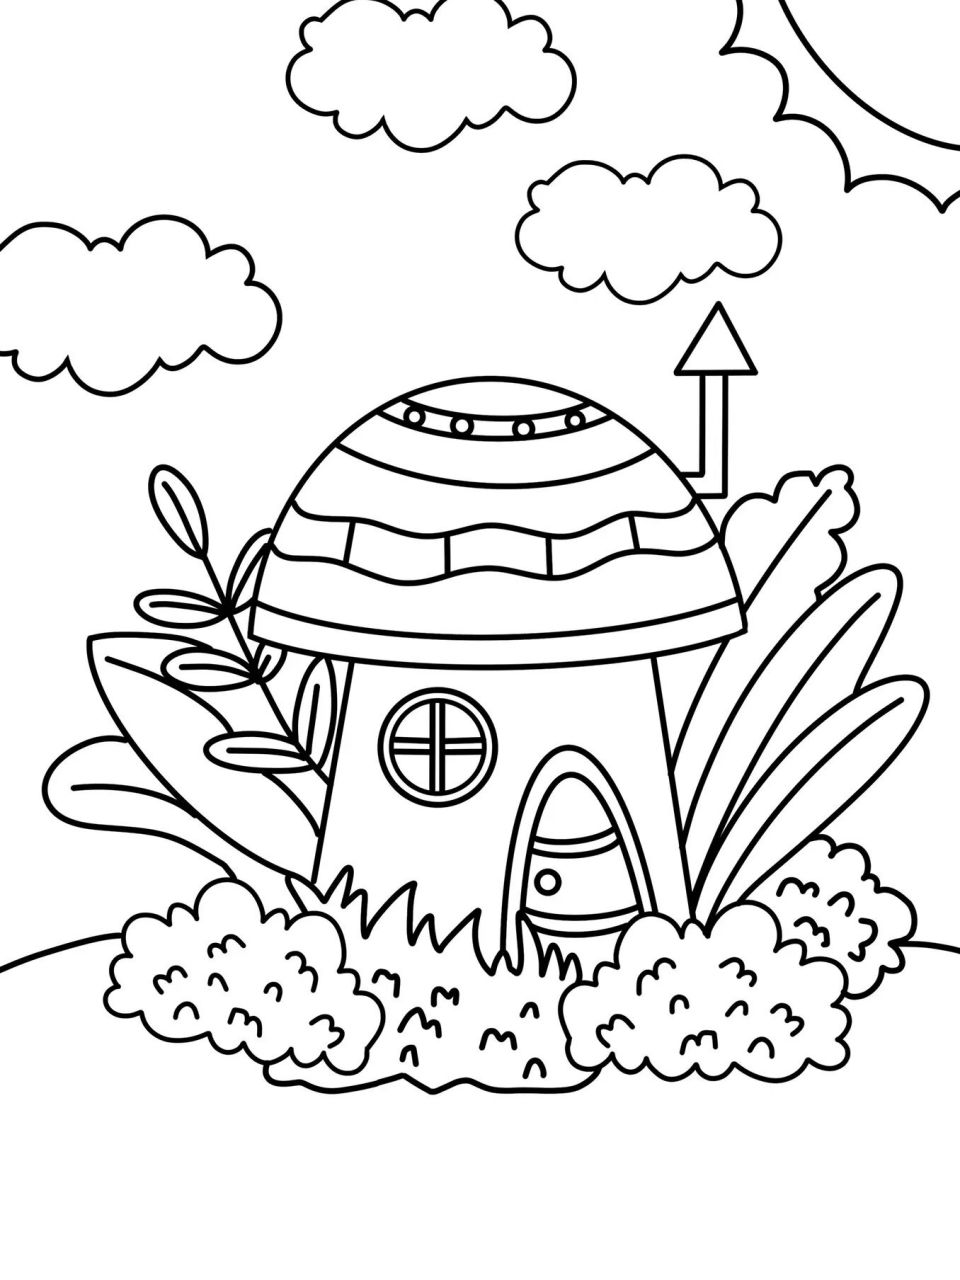 蘑菇房子简笔画 简单图片